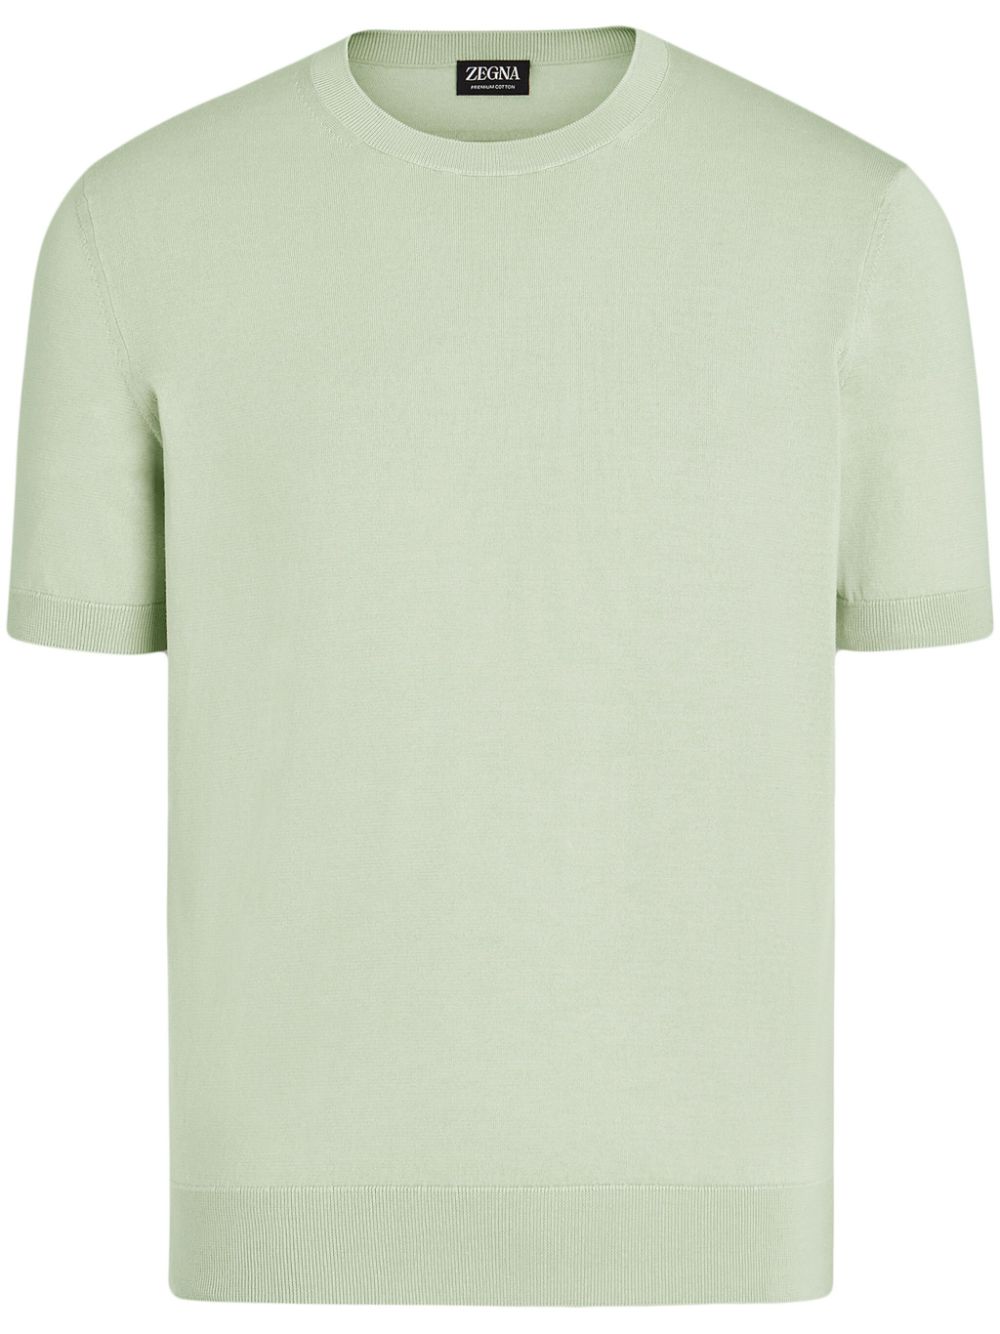 Zegna Fijngebreid T-shirt Groen